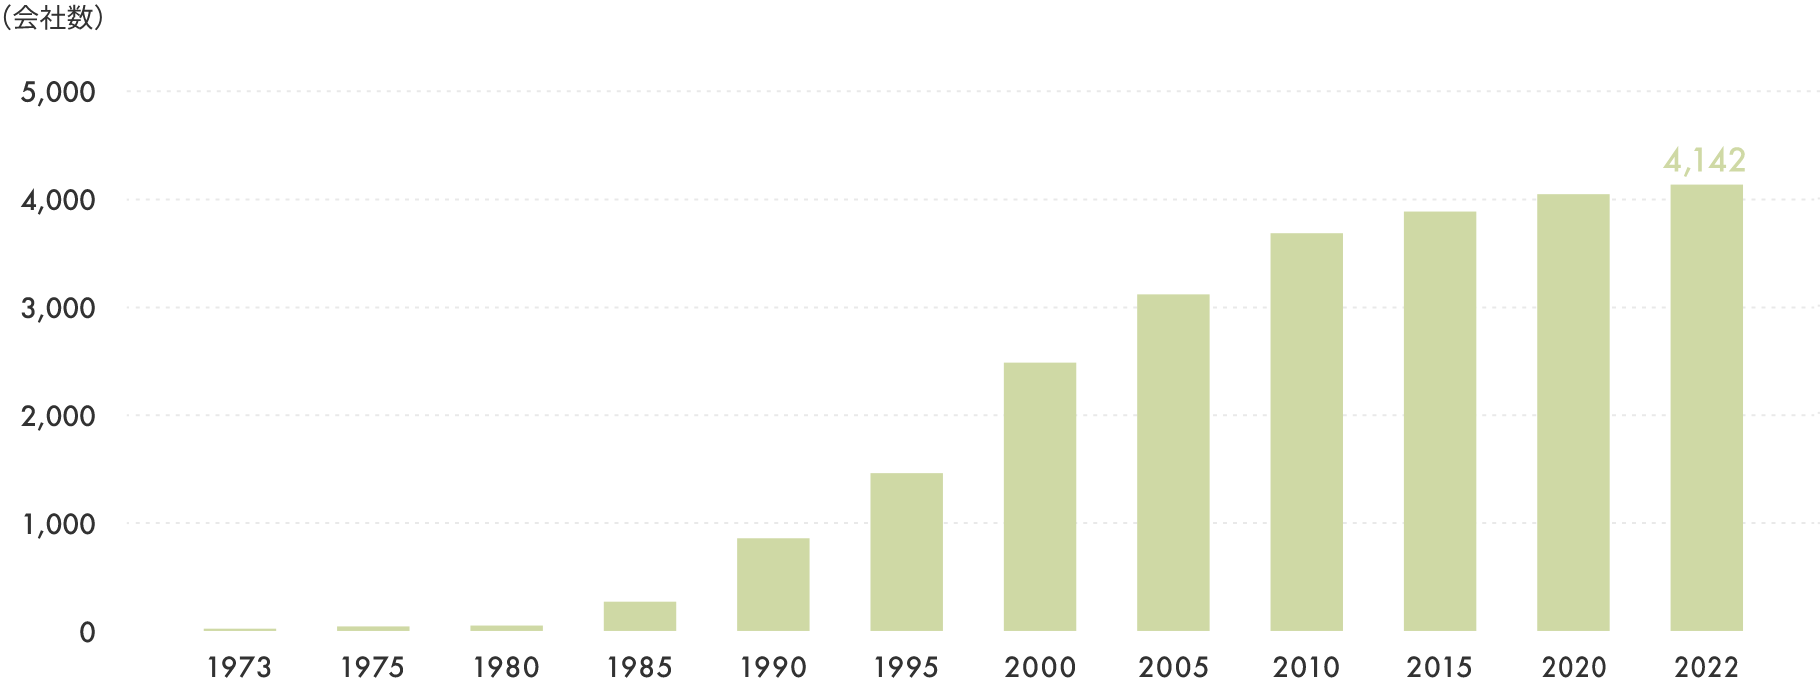 棒グラフ:1973年から、2022年までに、4,142社に増加